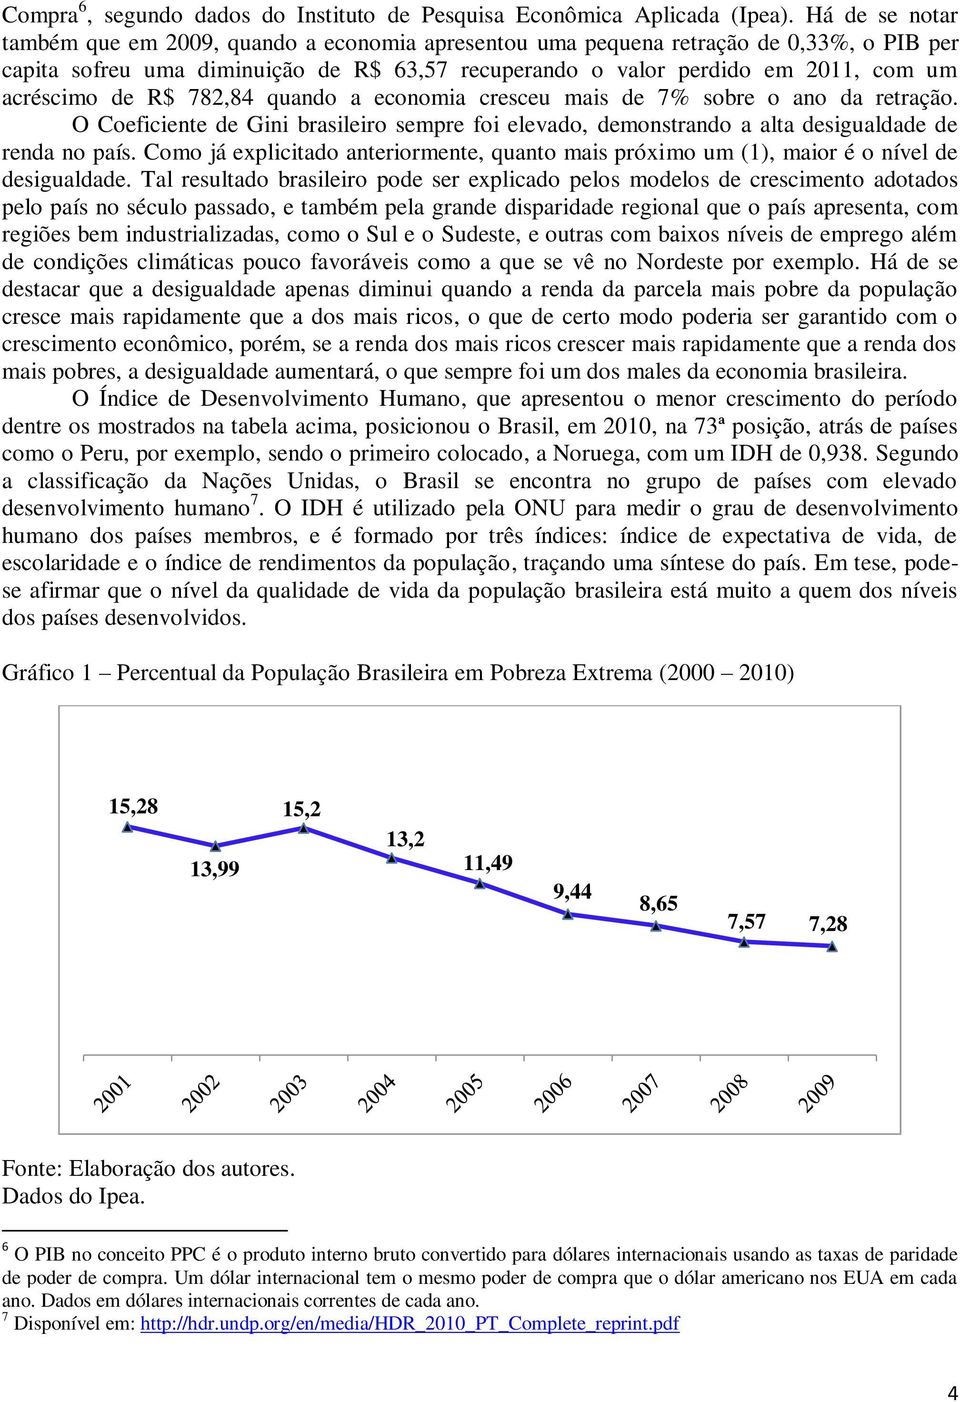 de R$ 782,84 quando a economia cresceu mais de 7% sobre o ano da retração. O Coeficiente de Gini brasileiro sempre foi elevado, demonstrando a alta desigualdade de renda no país.